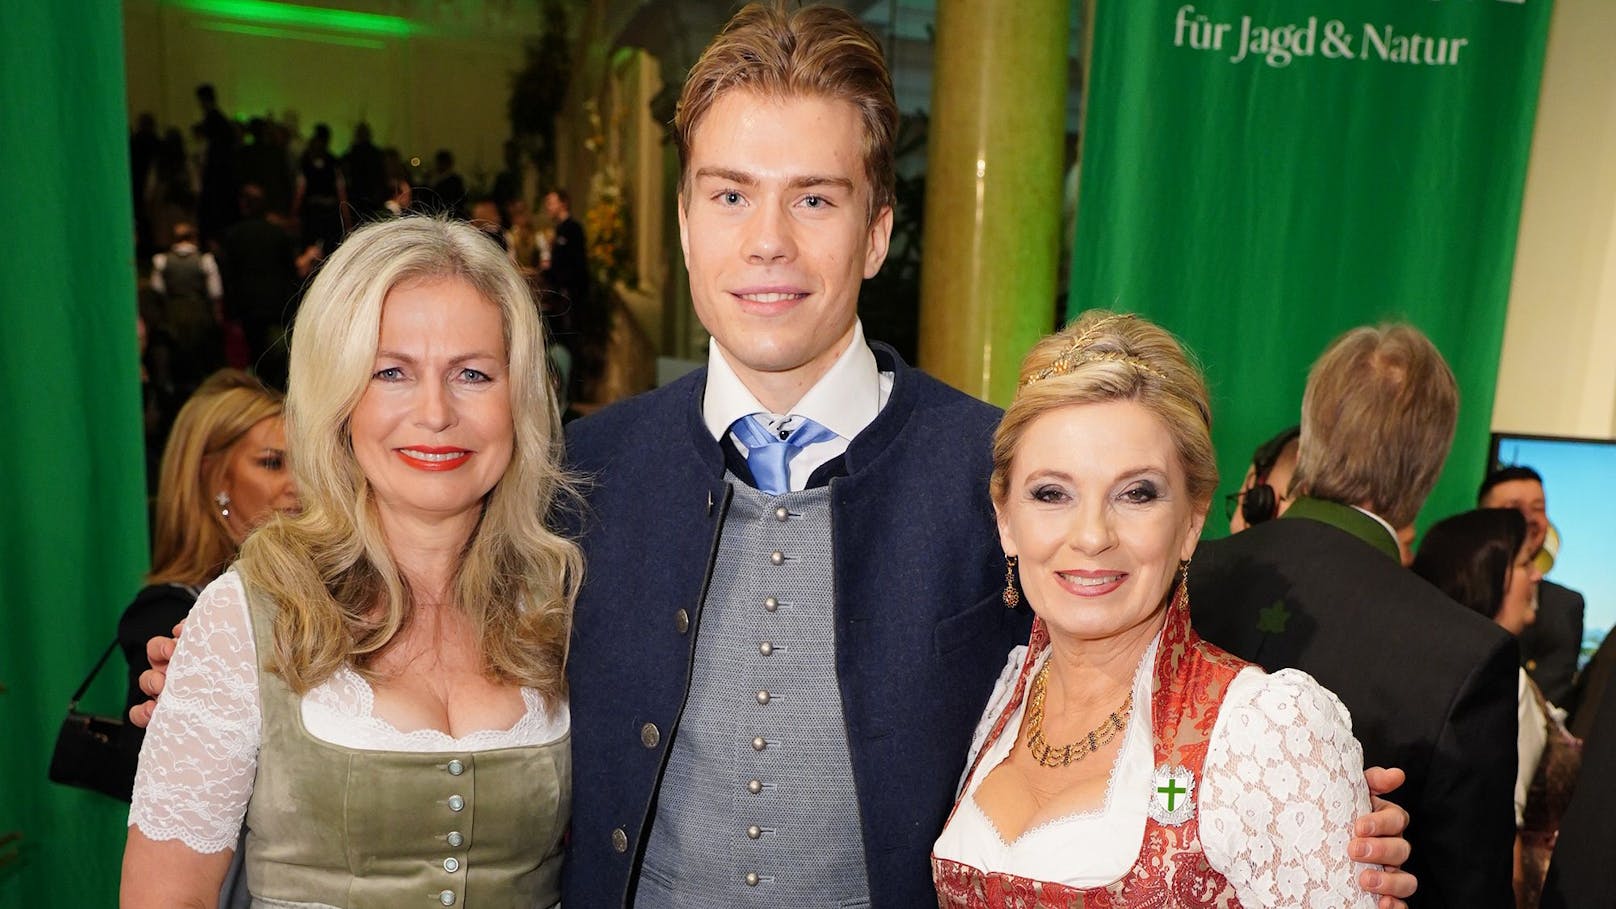 Sonnige Gemüter: ORF-Moderatorin Claudia Reiterer mit Sohnemann Julian Lockl und Wetter-Lady Christa Kummer